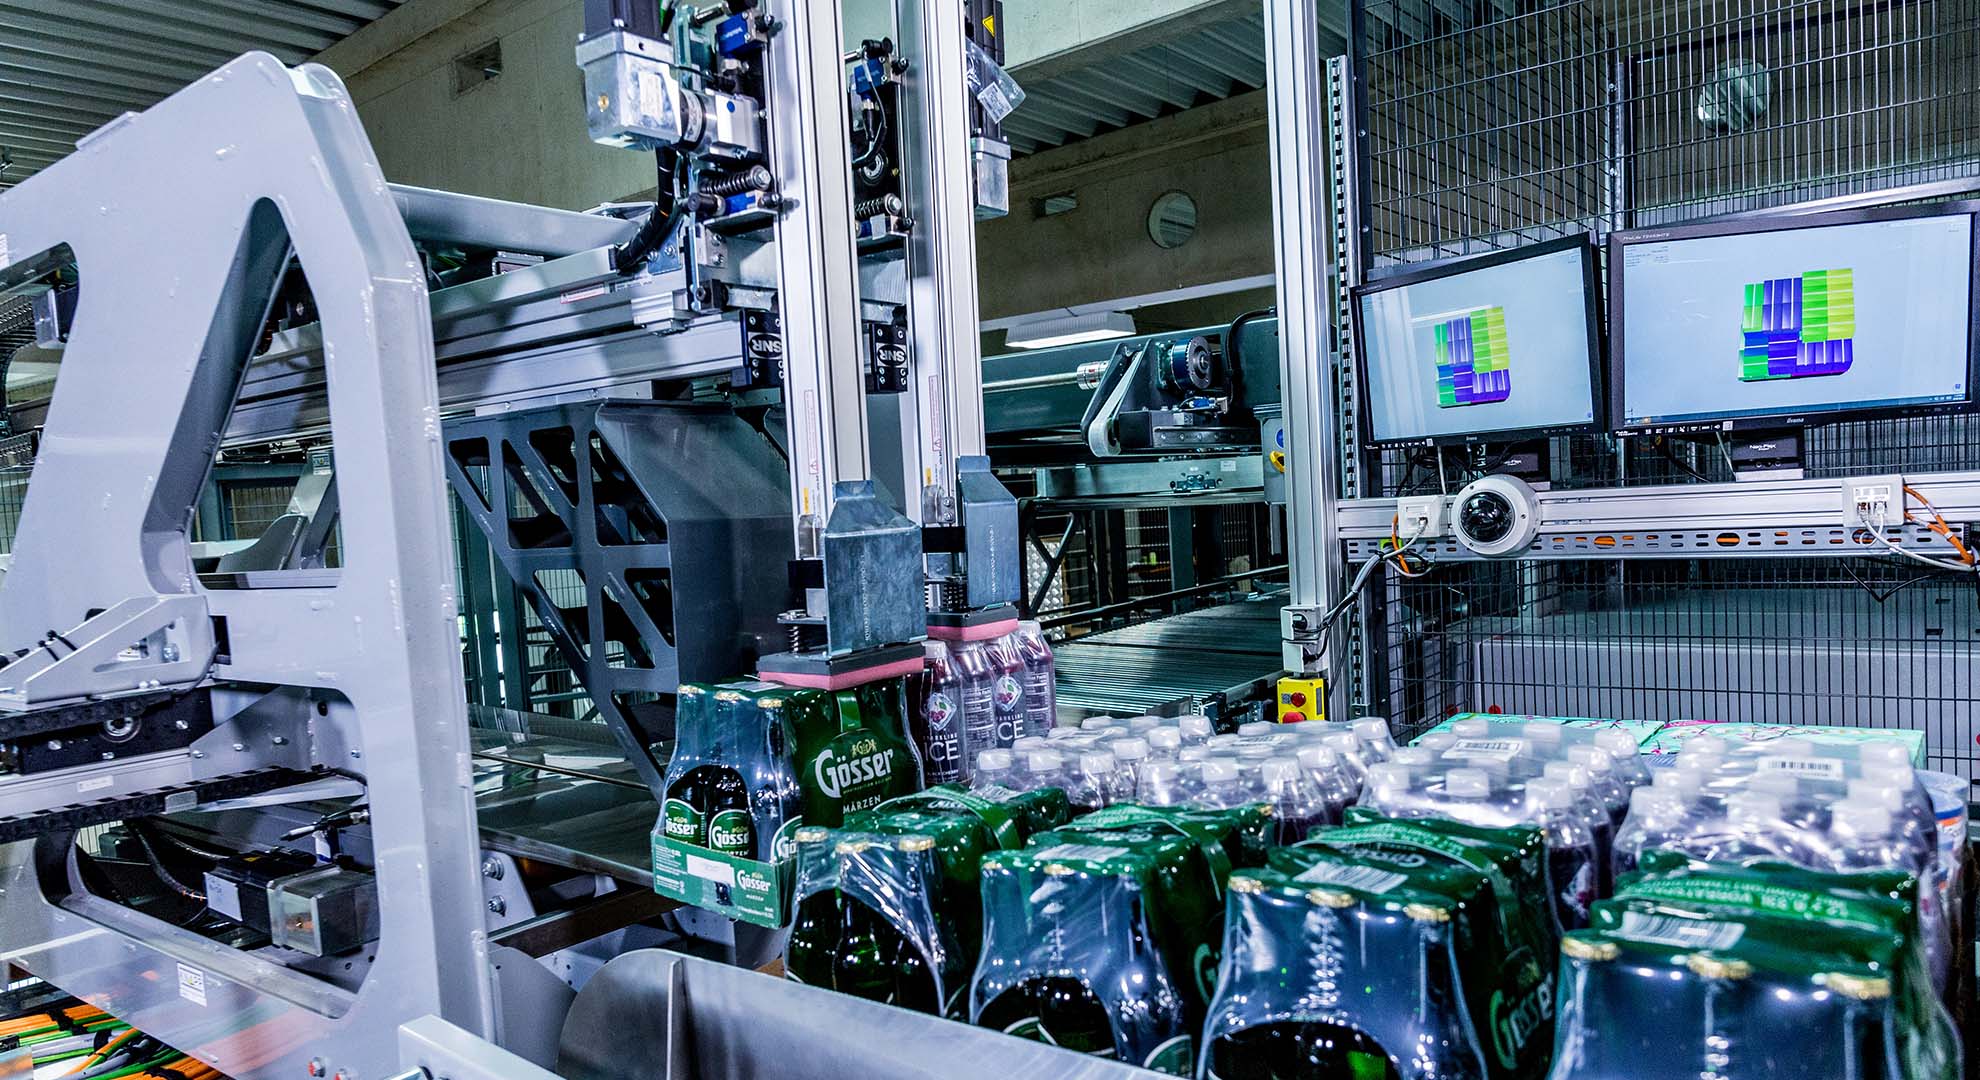 Las soluciones robóticas paletizan embalajes grandes y respaldan a los empleados en los trabajos físicos pesados